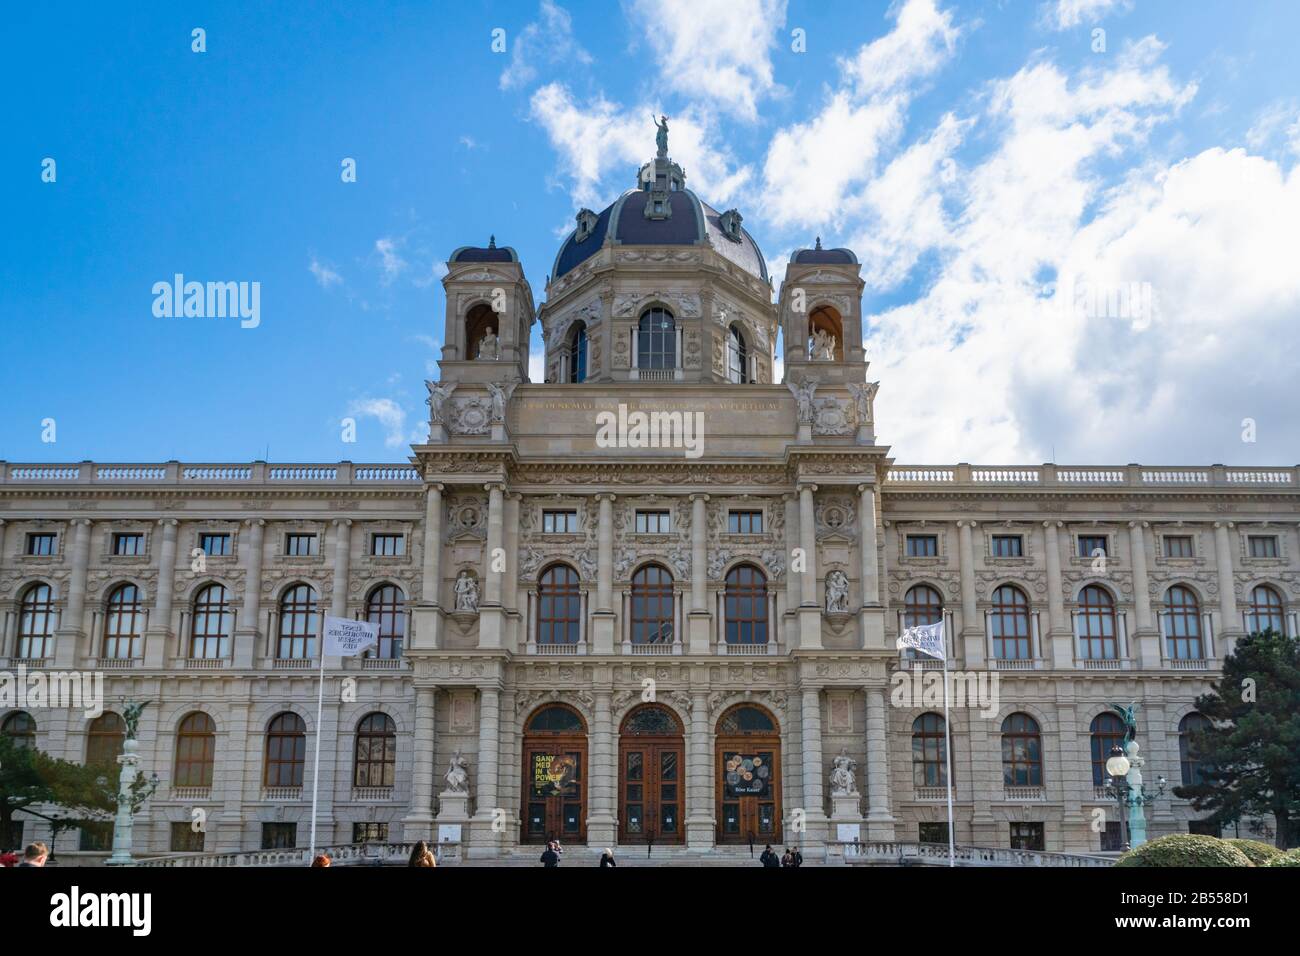 Wien, Österreich - März 2020: Kunsthistorische Museumsarchitektur (Kunsthistorisches Museum) am Marie-Theresien-Platz in Wien, Österreich. Stockfoto